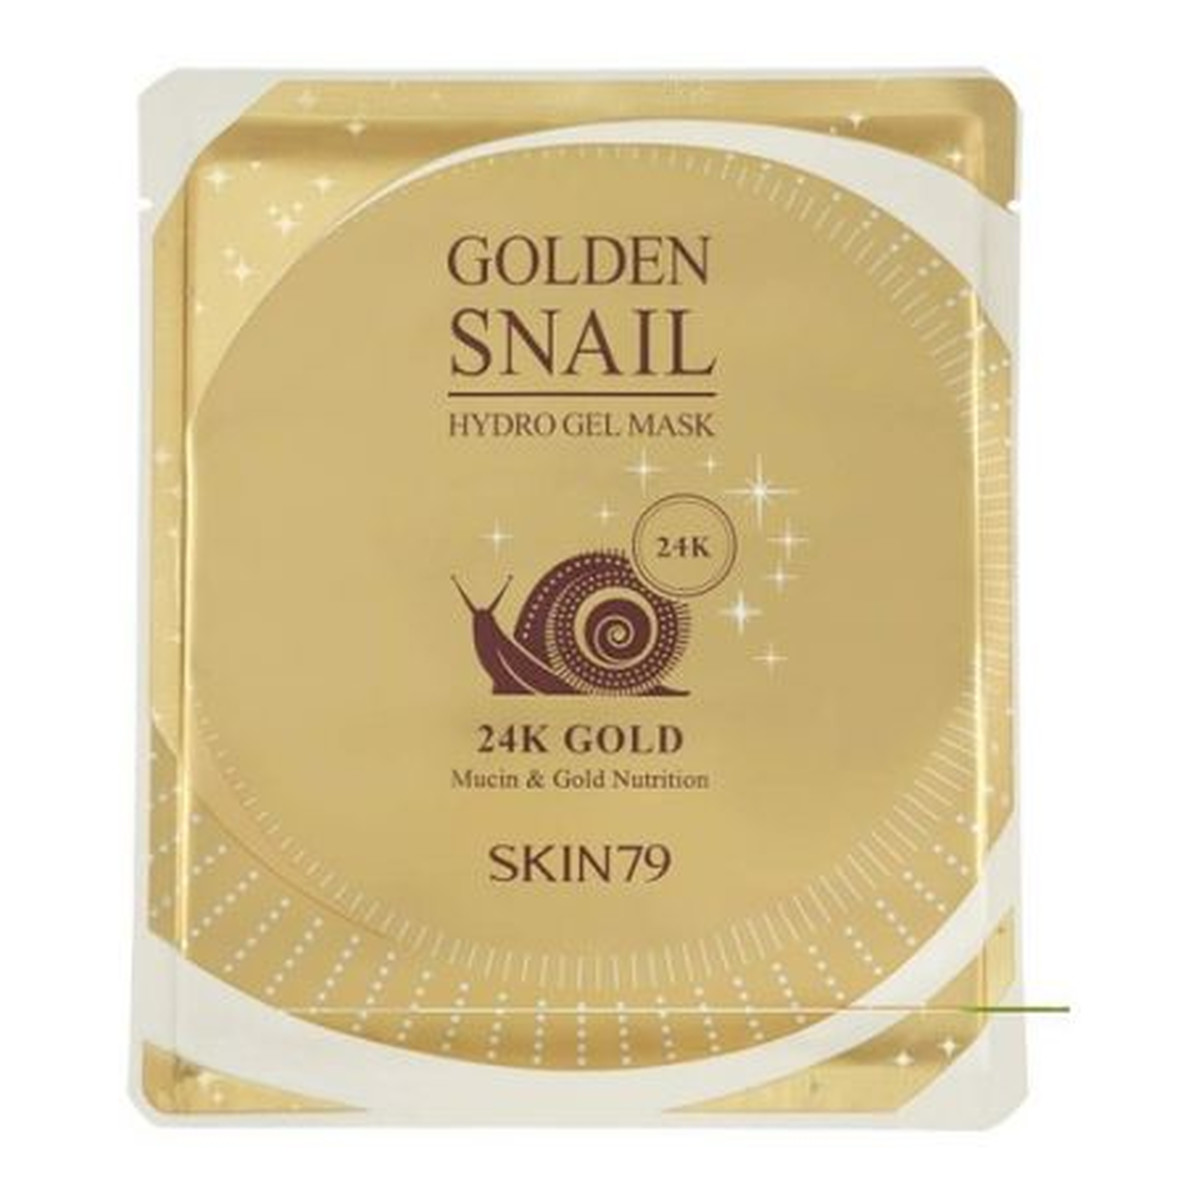 Skin79 Golden Snail Hydro Gel Mask 24k Gold koreańska luksusowa hydrożelowa maska w płacie ze złotem 1 sztuka 25g